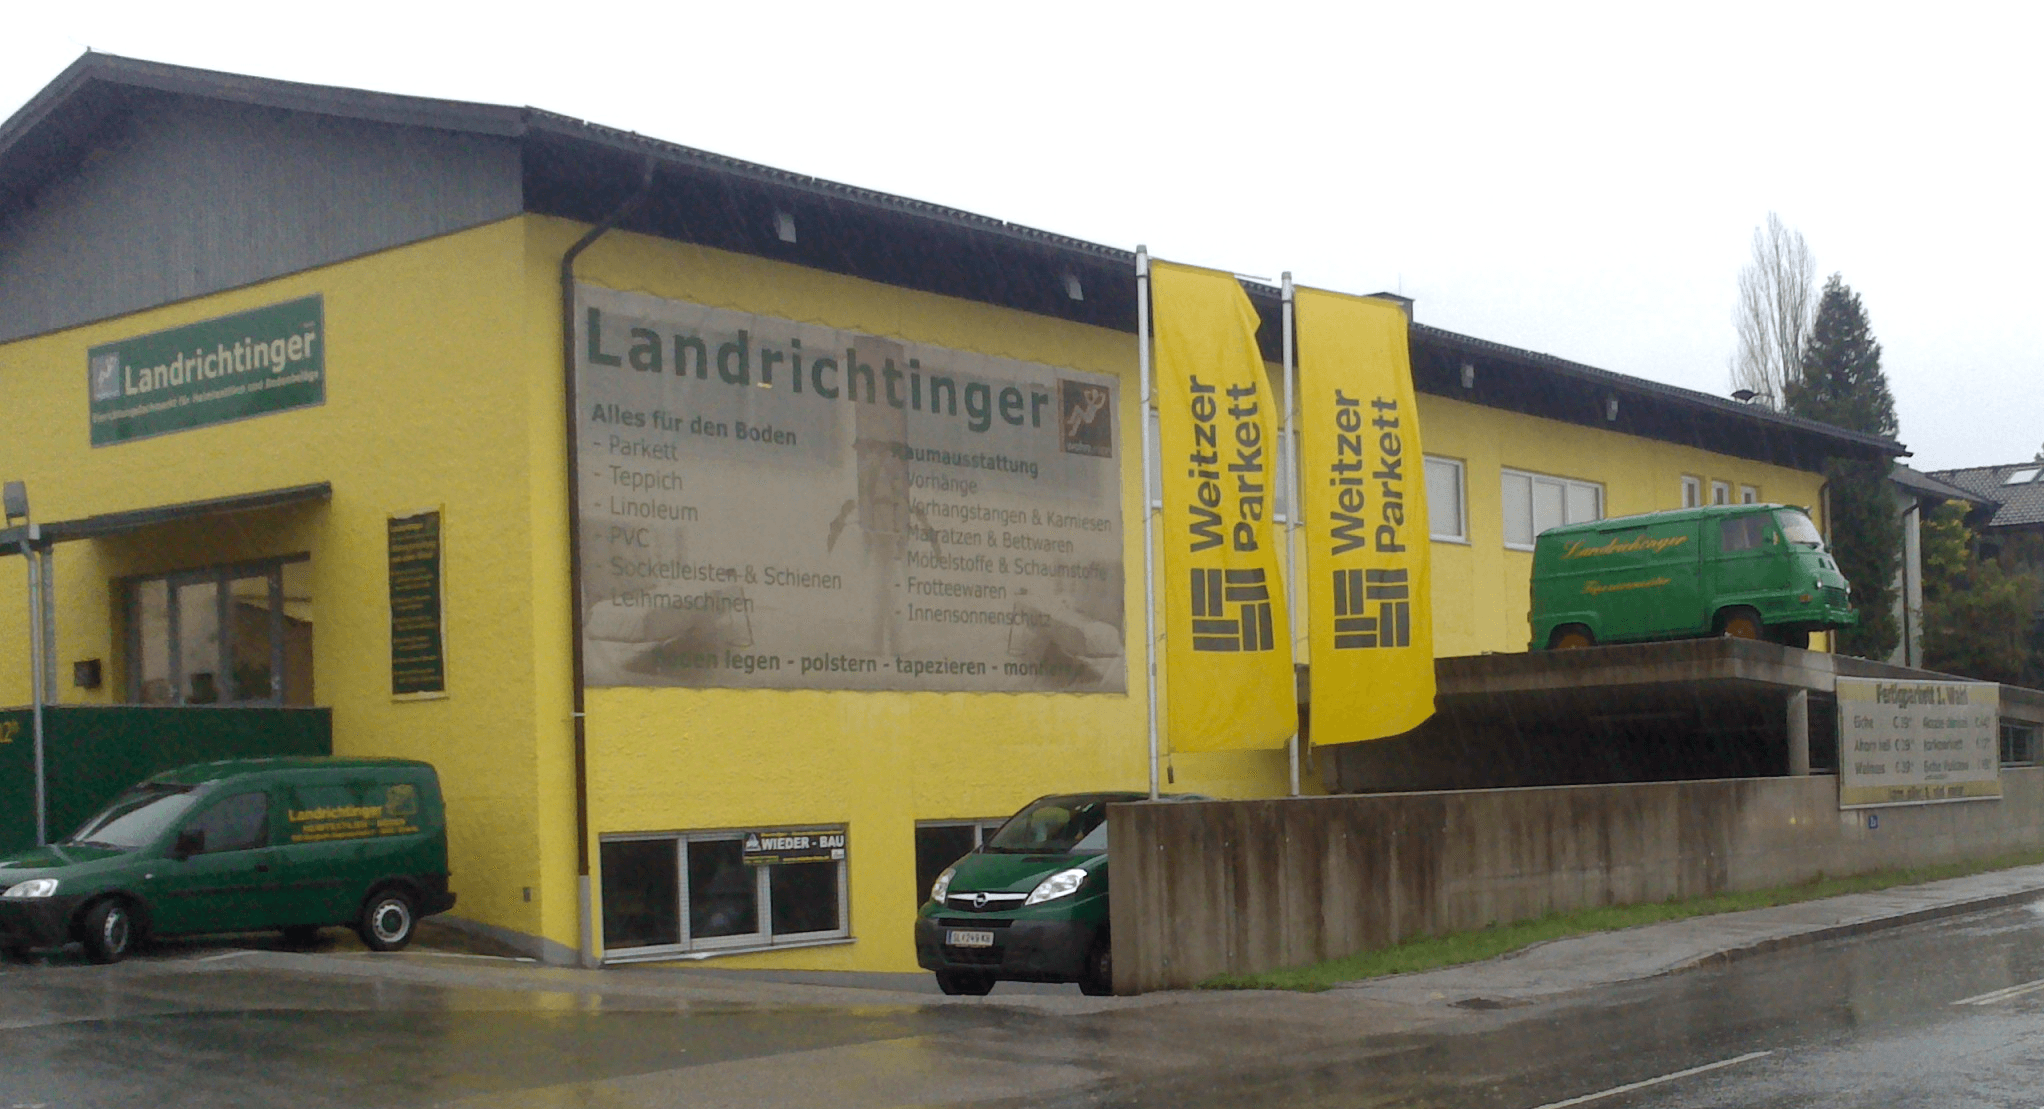 Vorschau - Foto 1 von Landrichtinger GmbH -Raumaustattung,Bodenleger